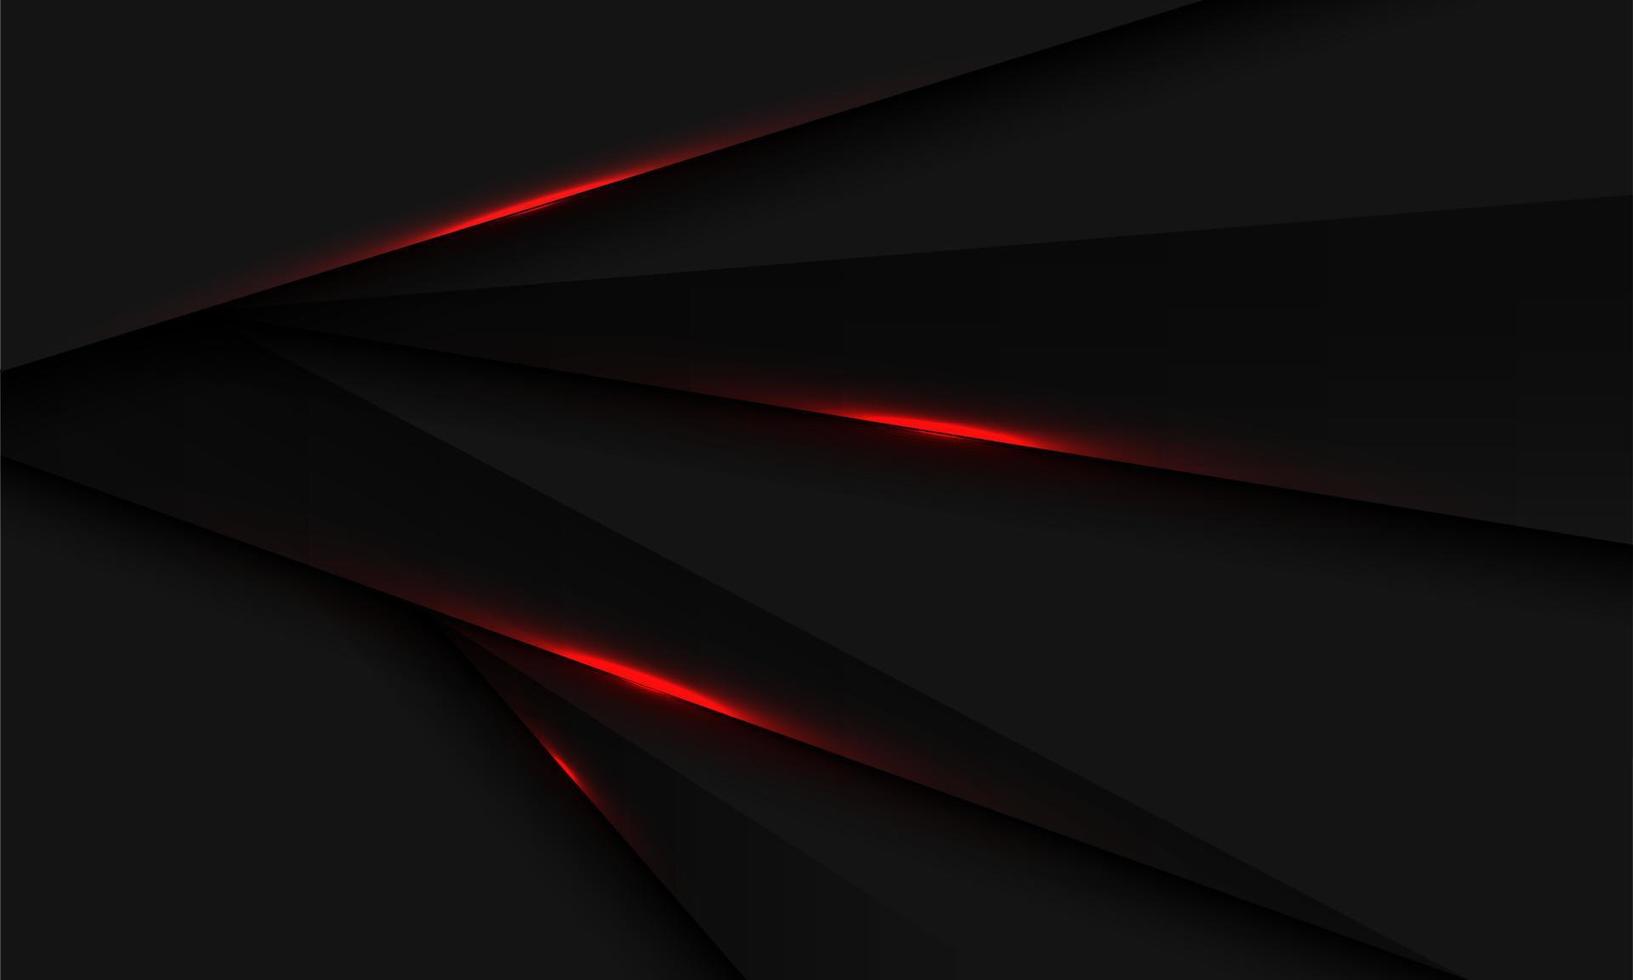 Resumen luz roja sobre negro metálico triángulo sombra diseño geométrico moderno futurista vector de fondo